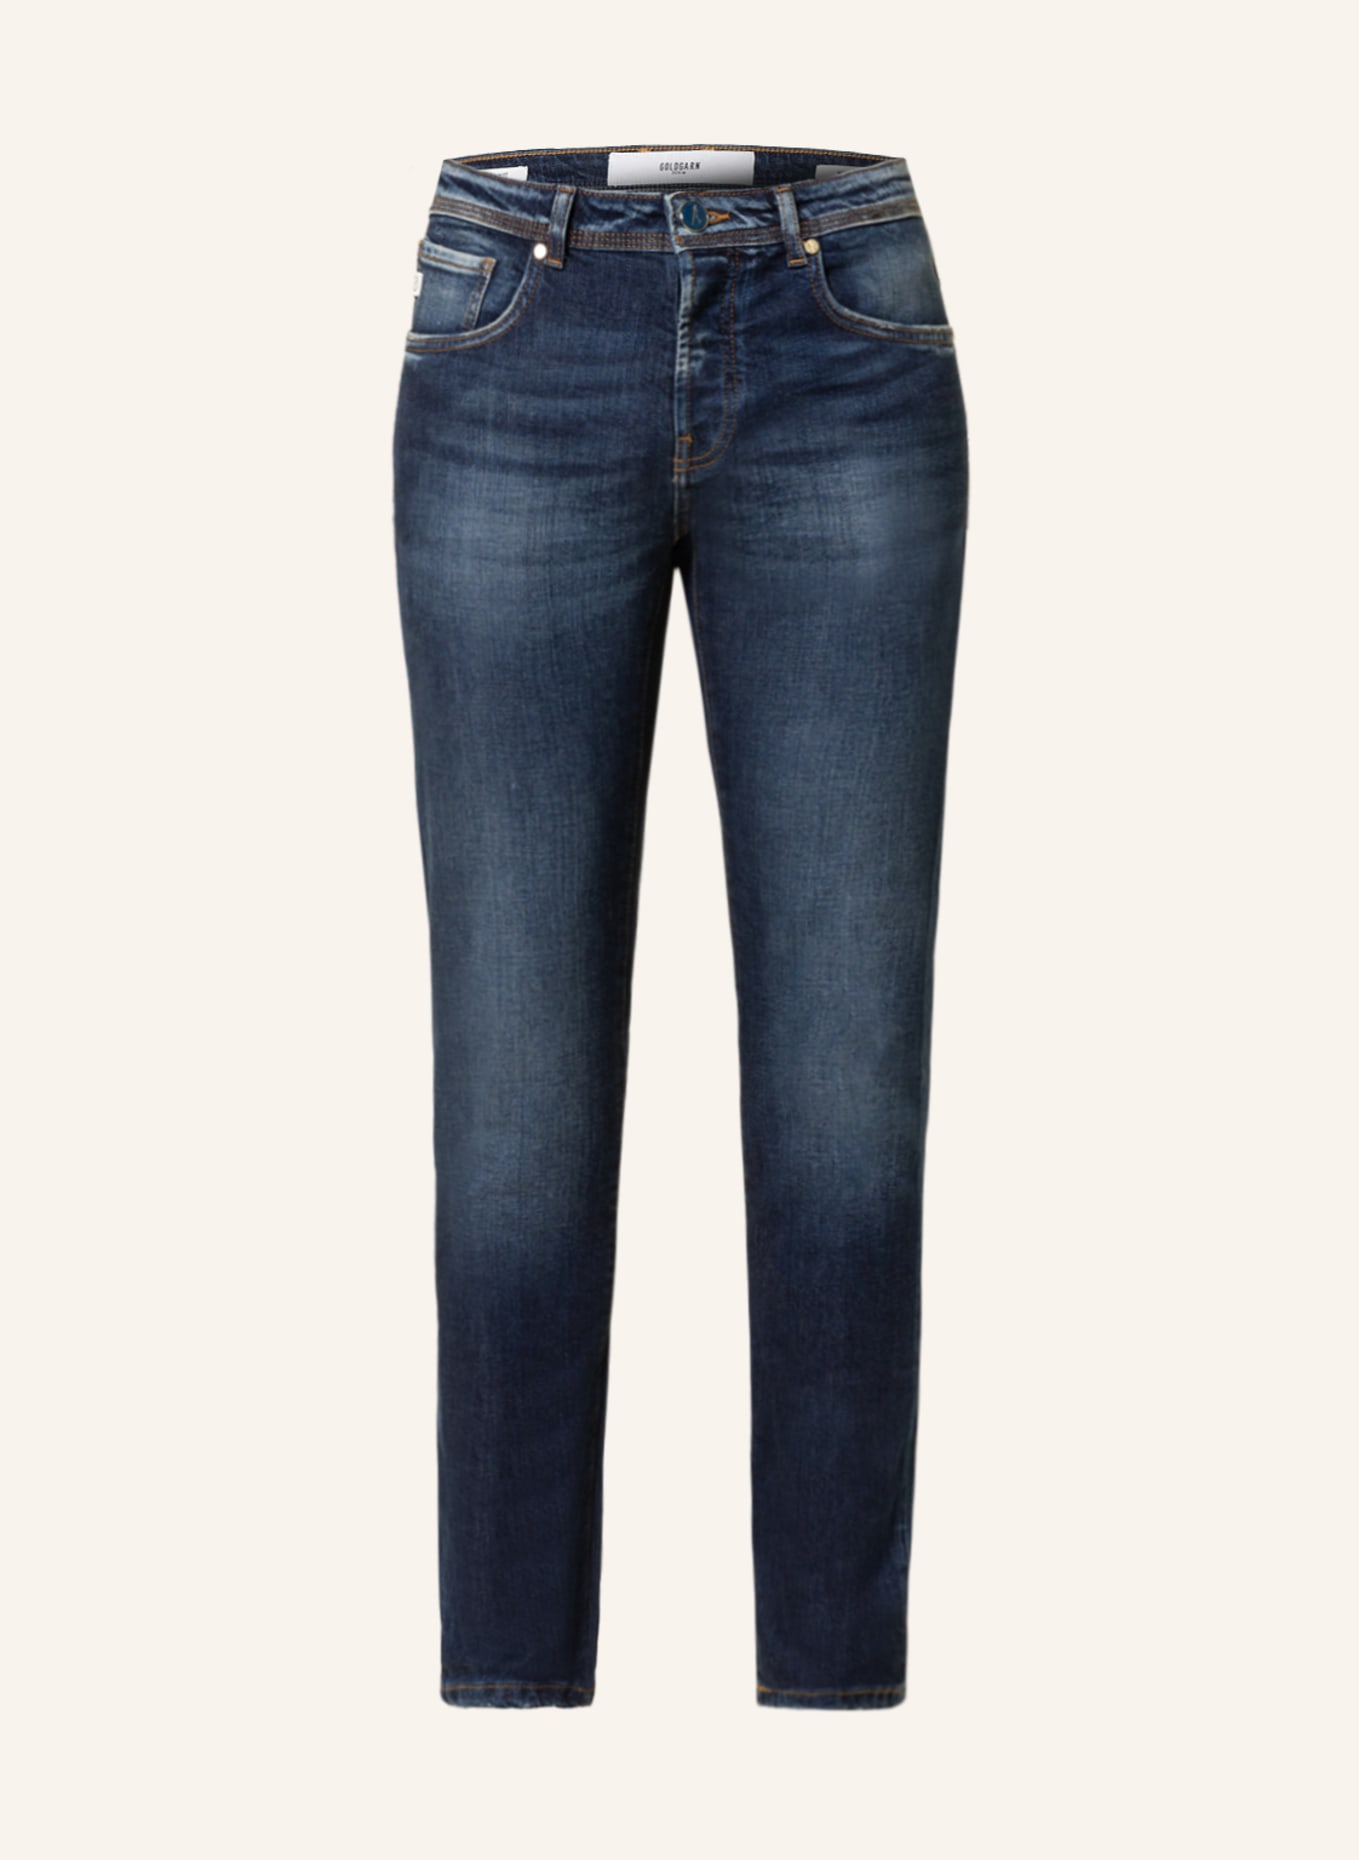 GOLDGARN DENIM Jeans U2 Slim Fit, Farbe: 1030 DARK BLUE (Bild 1)